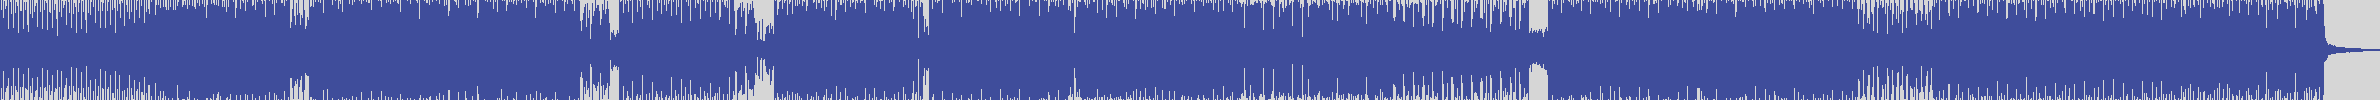 nf_boyz_records [NFY067] Poptek - Atomic System [K Mion Mix] audio wave form